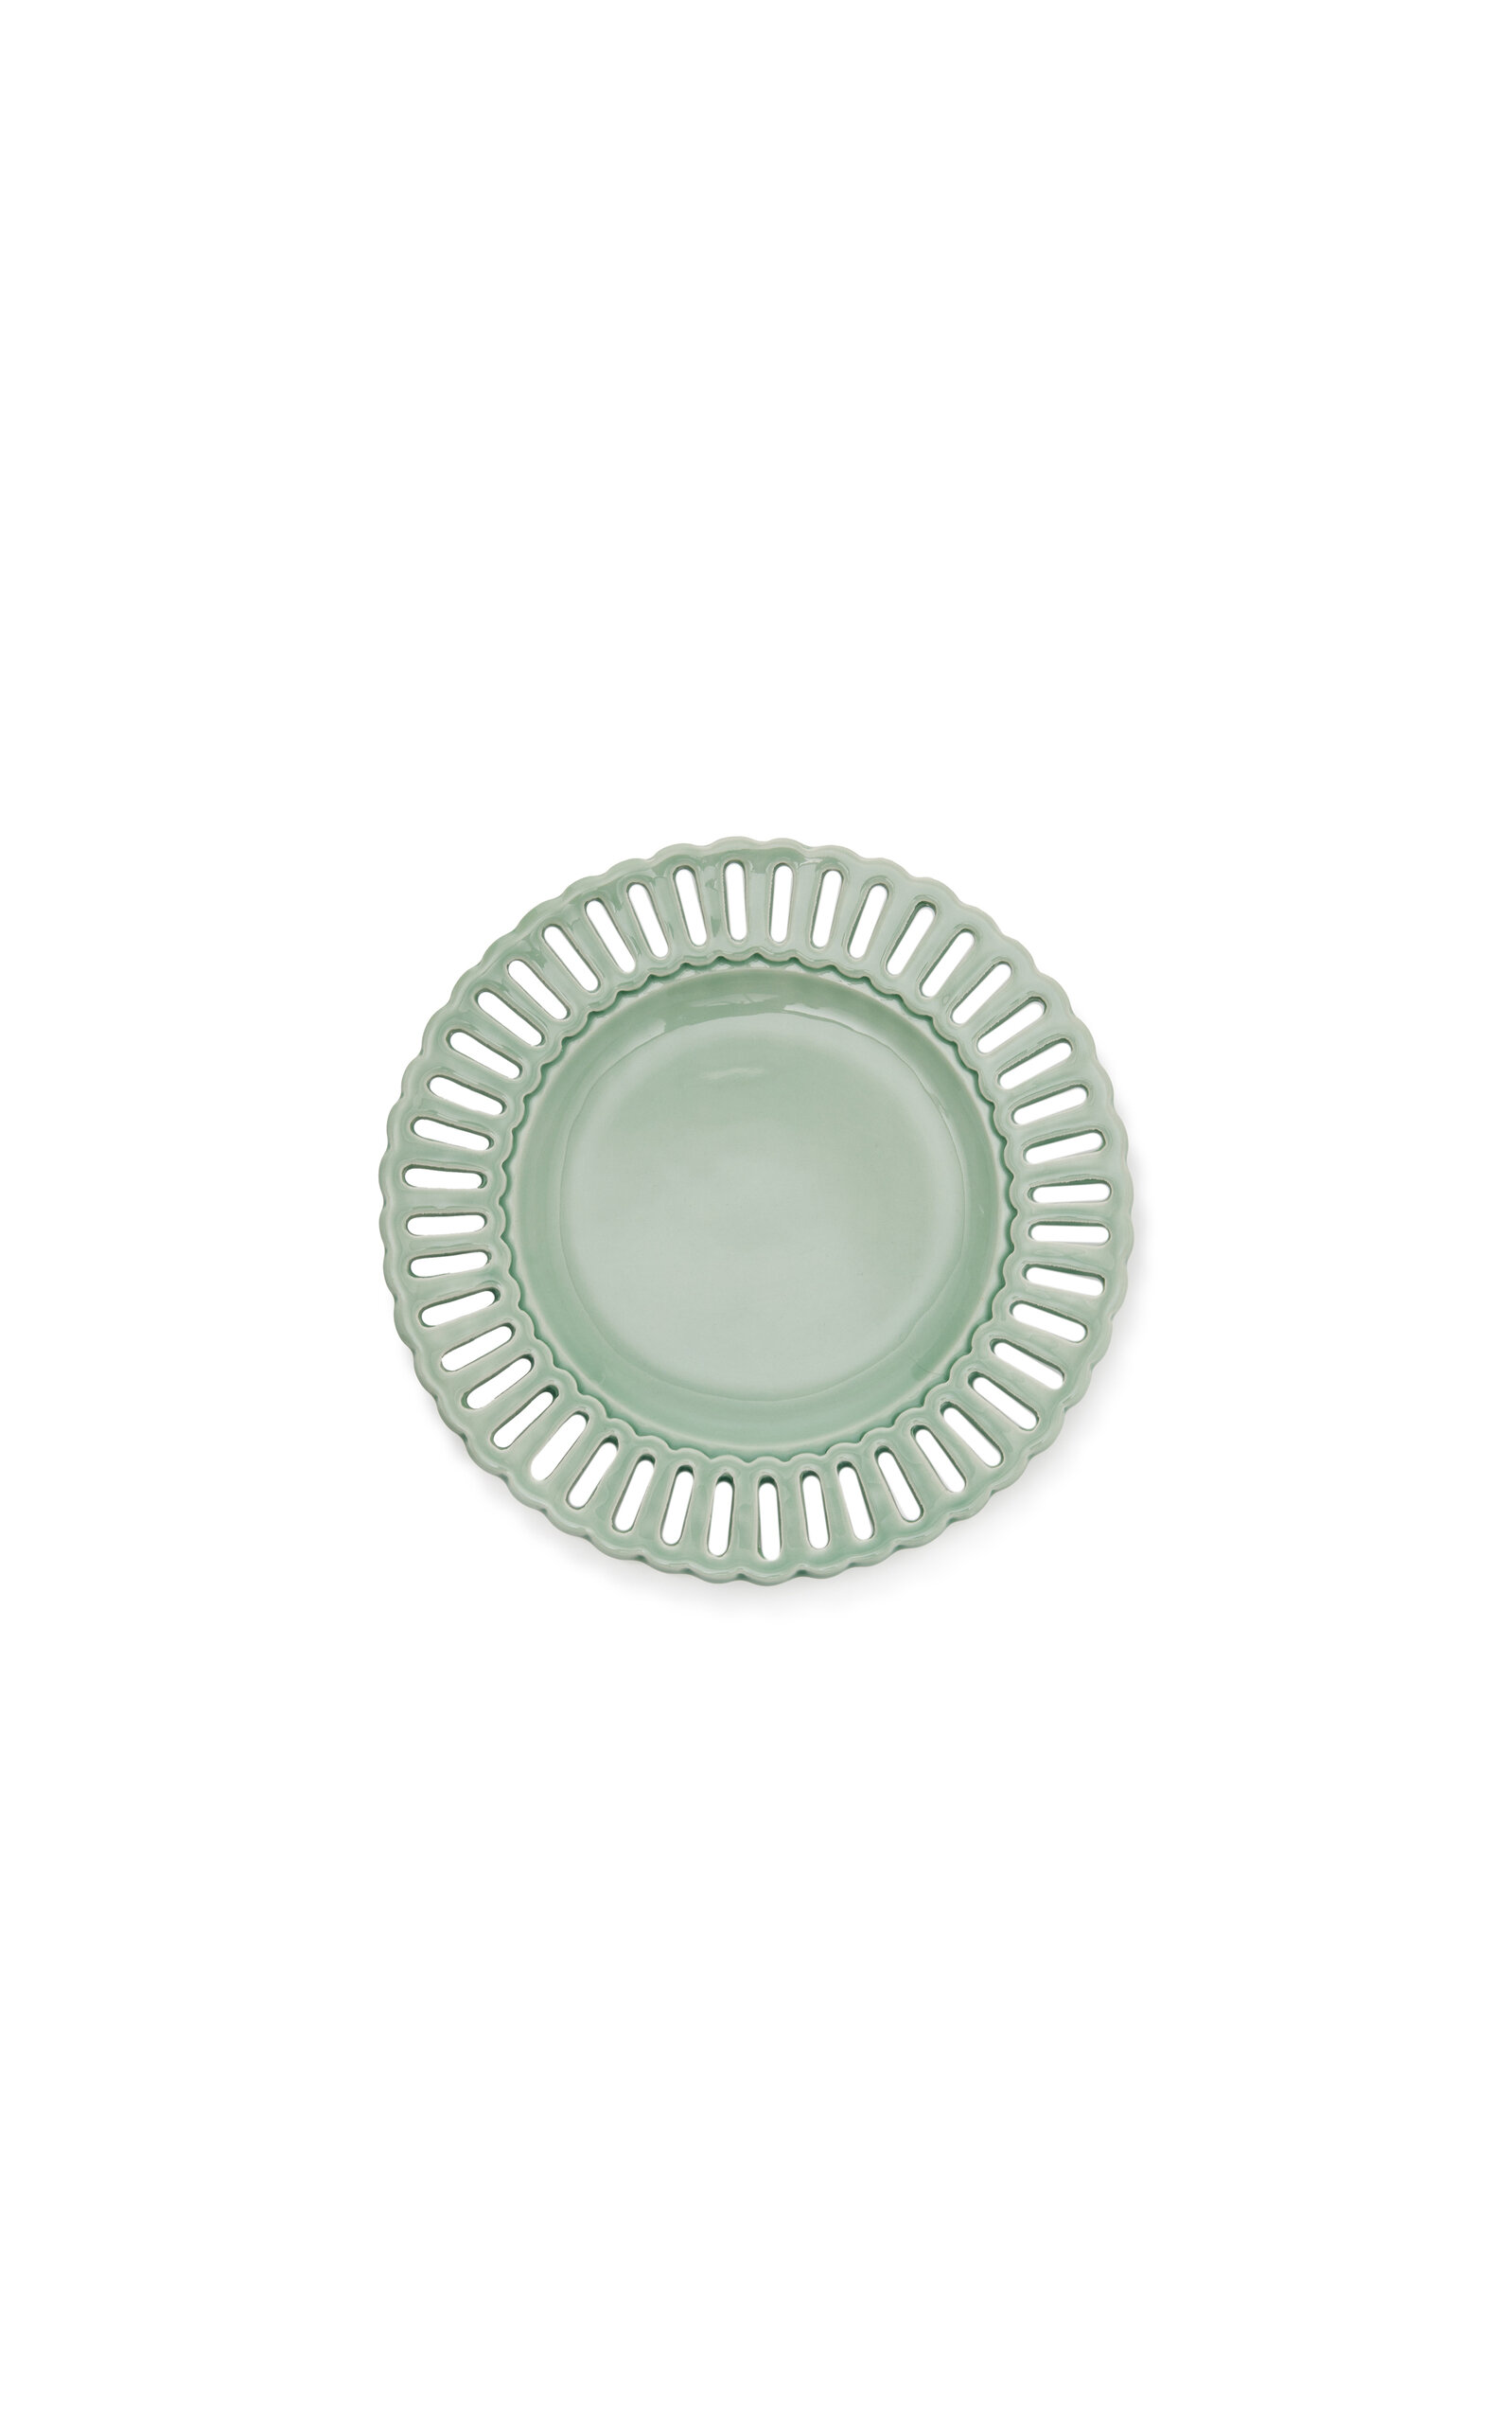 Moda Domus Balconata Creamware Dessert Plate In Green